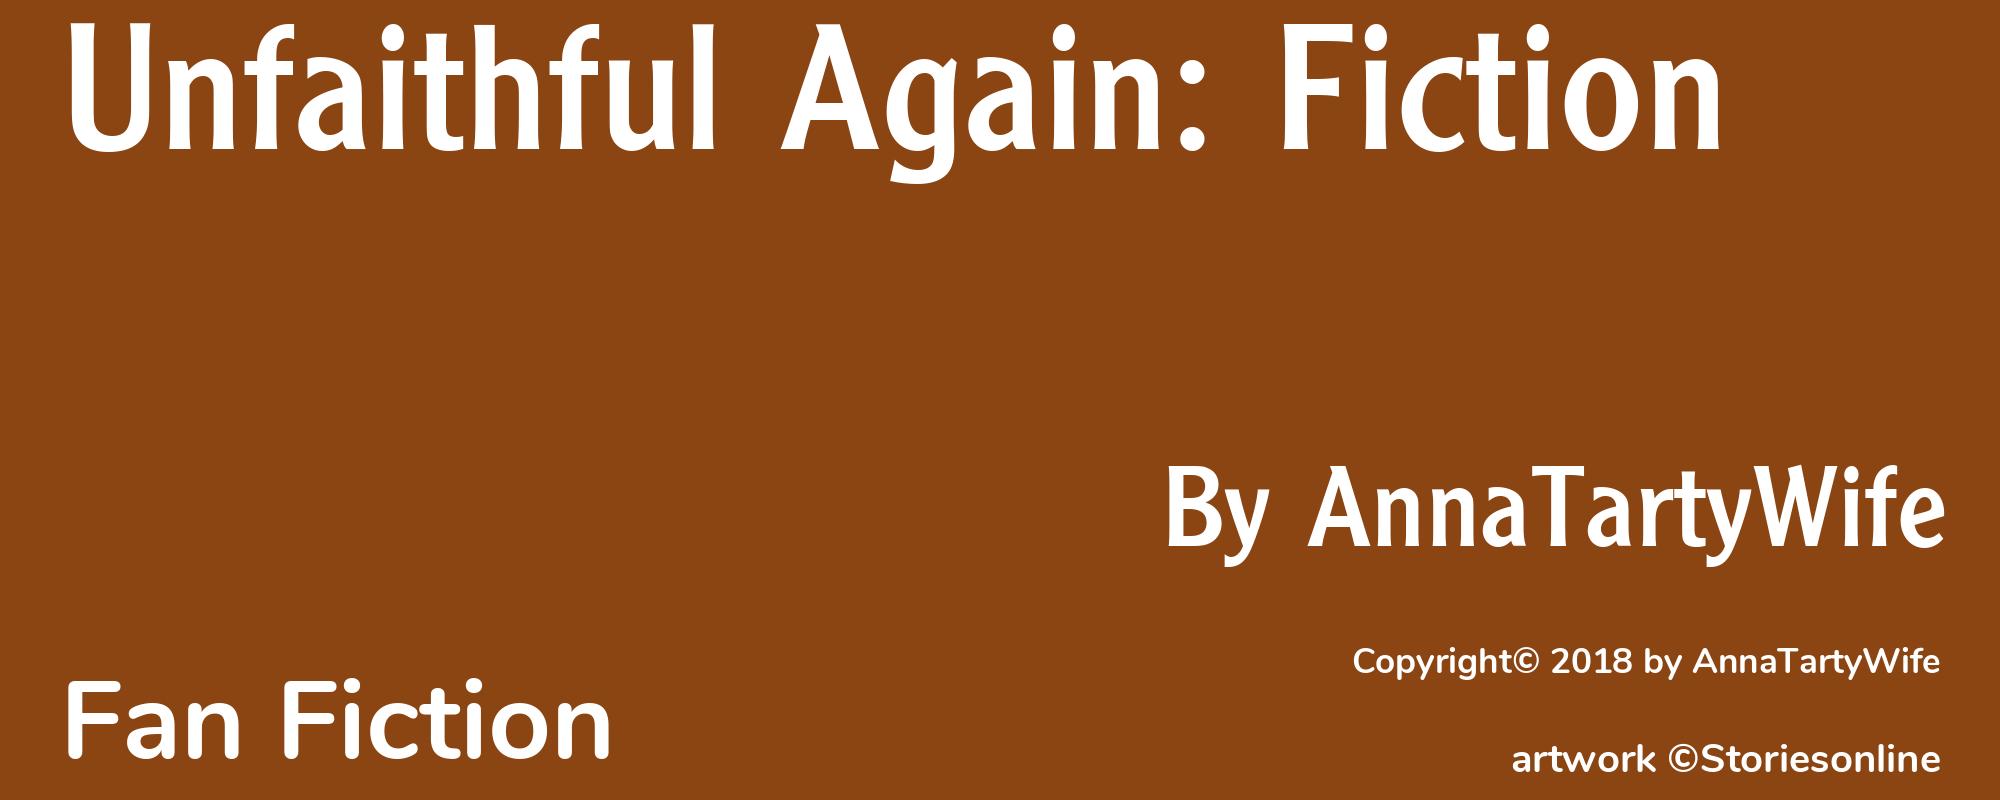 Unfaithful Again: Fiction - Cover